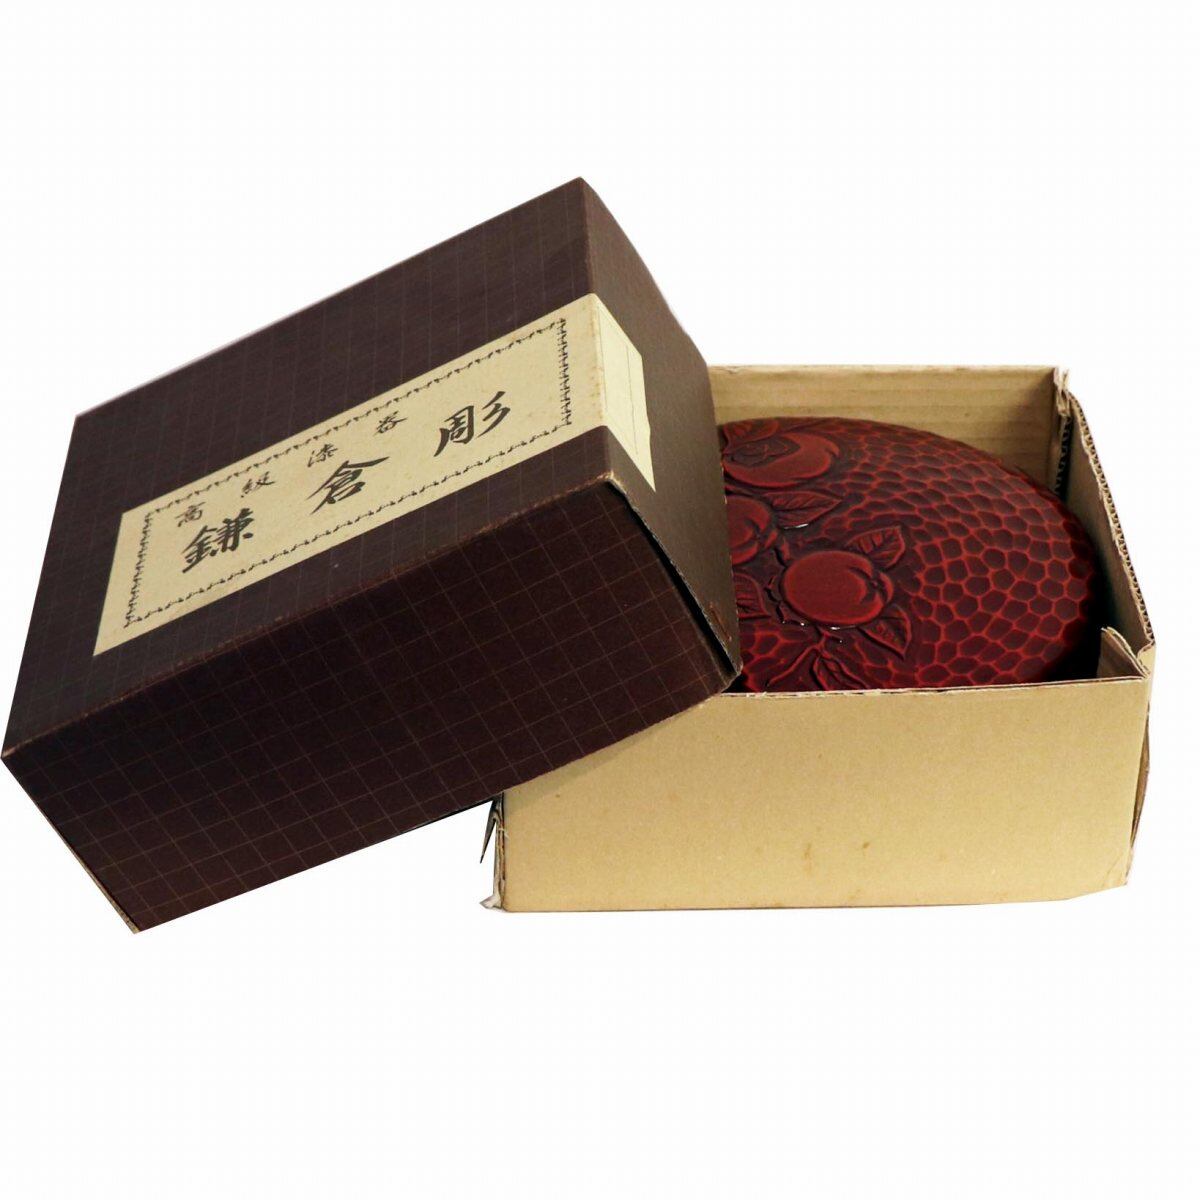 鎌倉彫 菓子器 蓋付 梅柄 高級漆器 良品 GQ-11